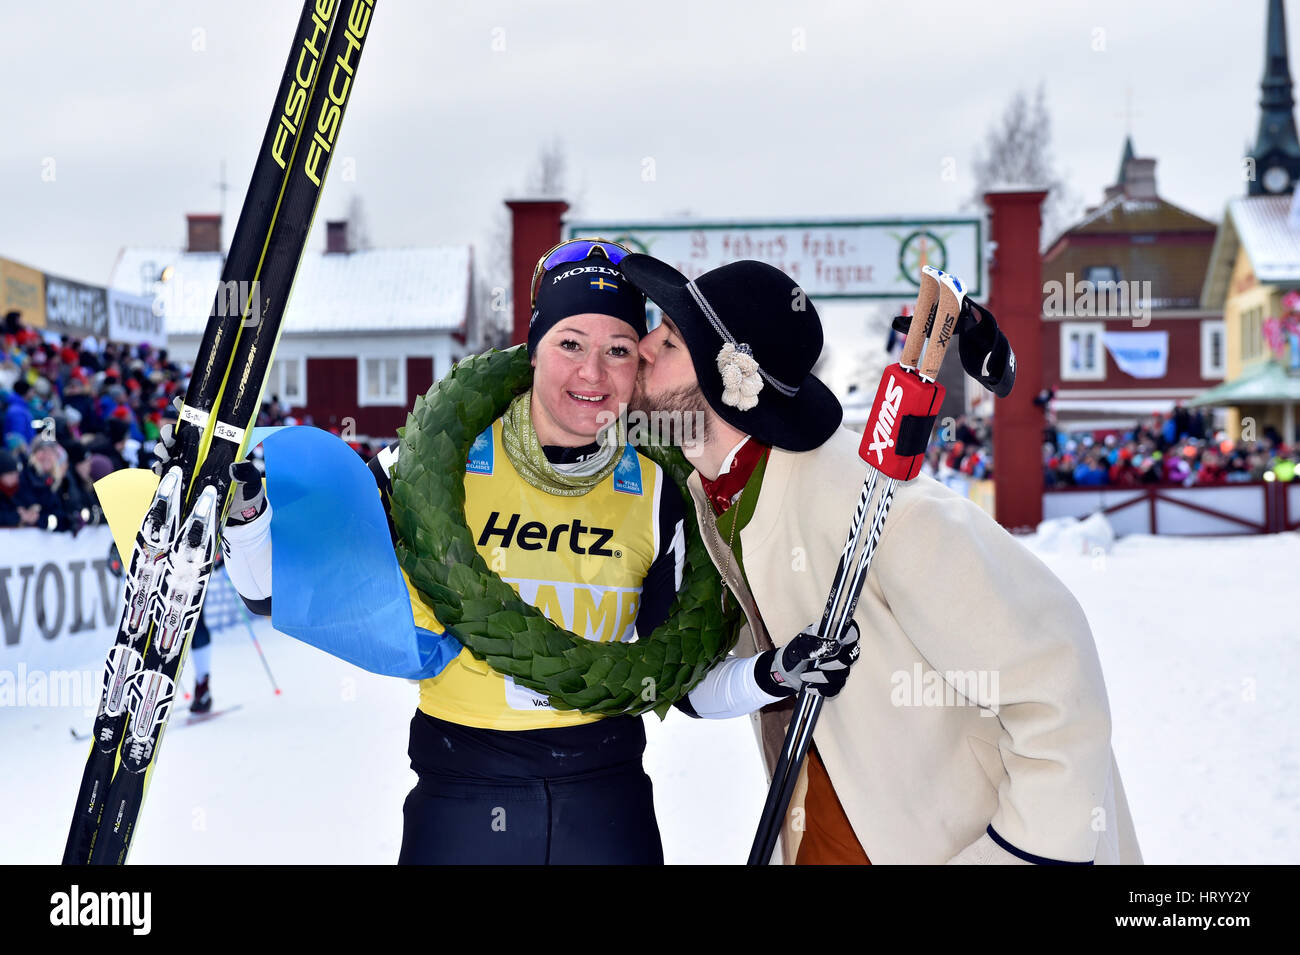 Stoccolma. Mar 5, 2017. In Svezia il Britta Johansson Norgren (L) pone per le foto dopo la vittoria delle donne Vasaloppet cross-country ski champion race nella regione di Dalarna della Svezia centrale, 5 marzo 2017. Credito: Vasaloppet/Xinhua/Alamy Live News Foto Stock